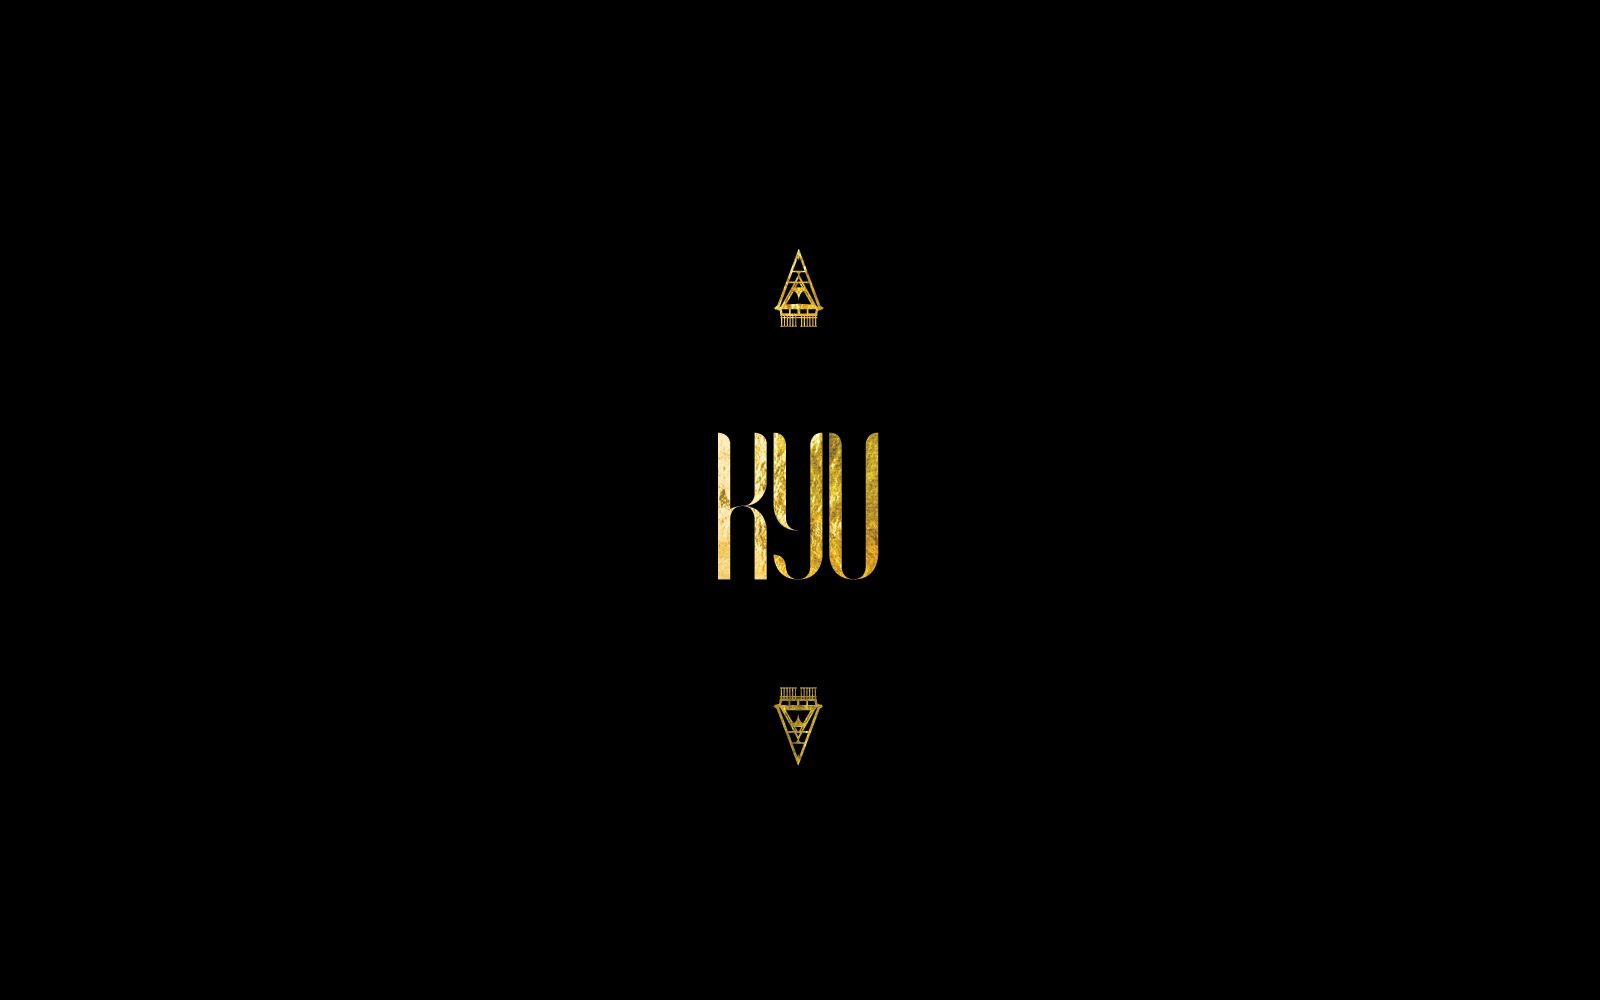 Kyu-logo-on-black